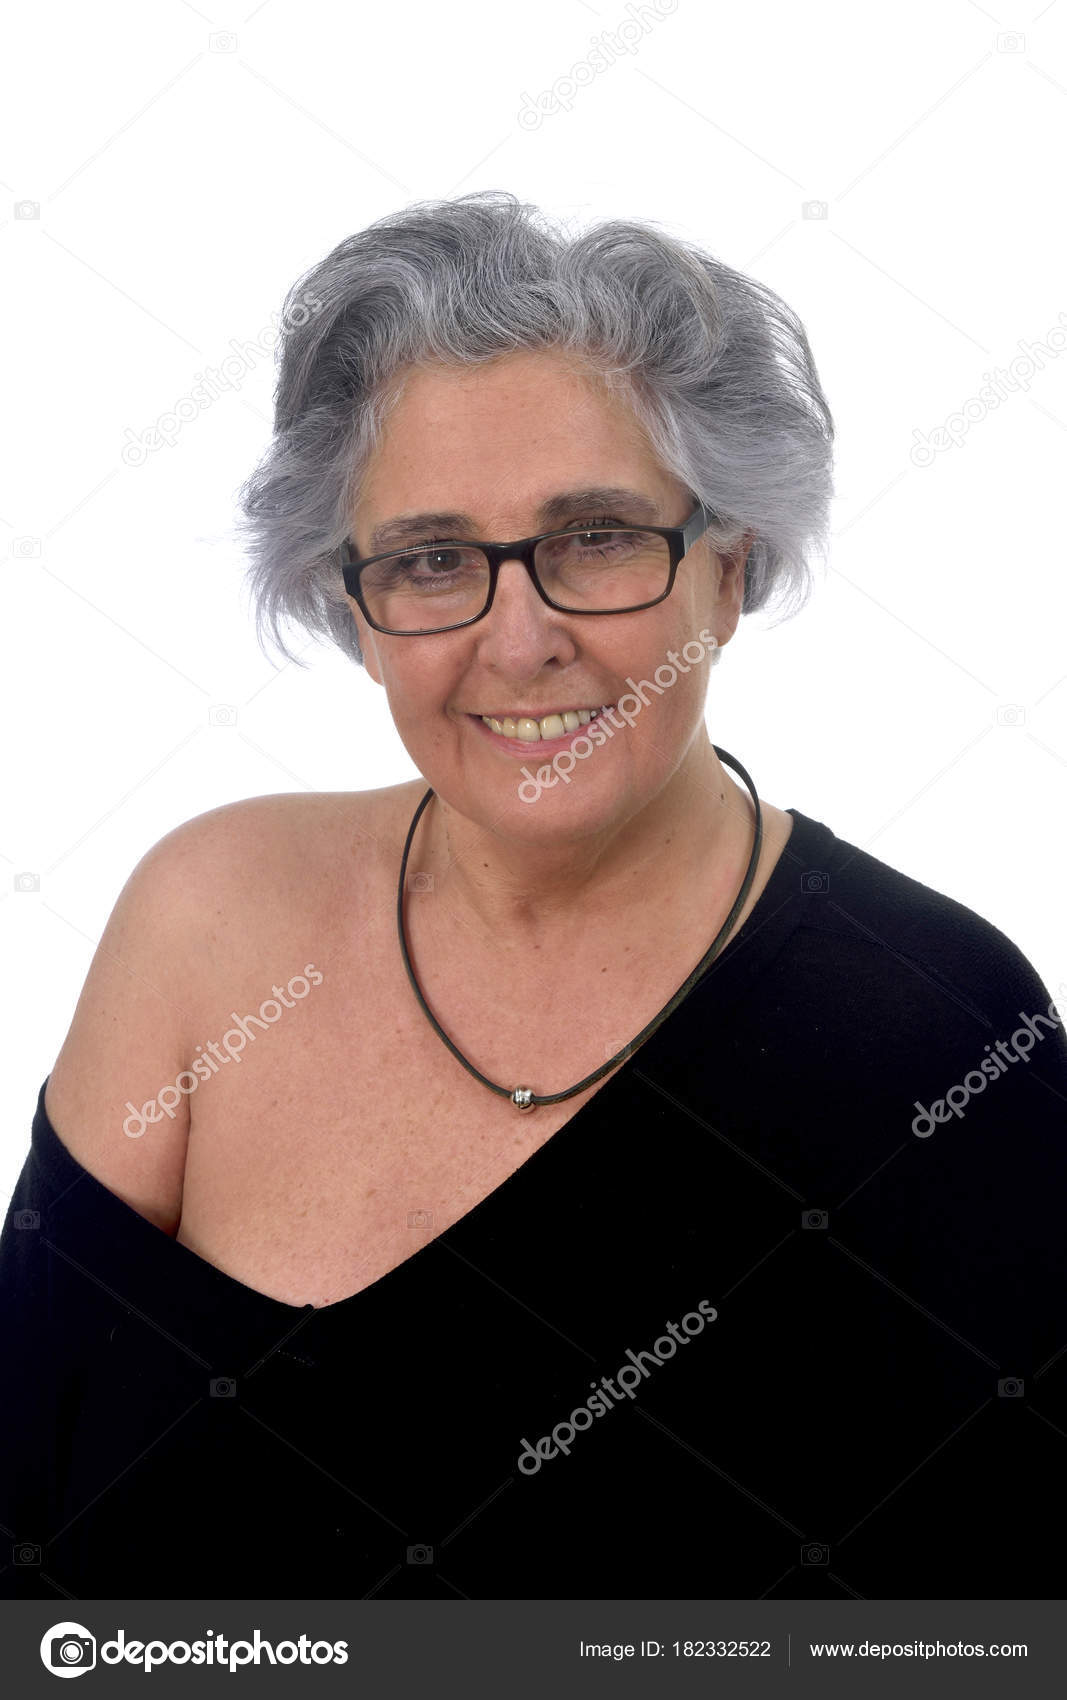 Hot older women in thongs-penty photo